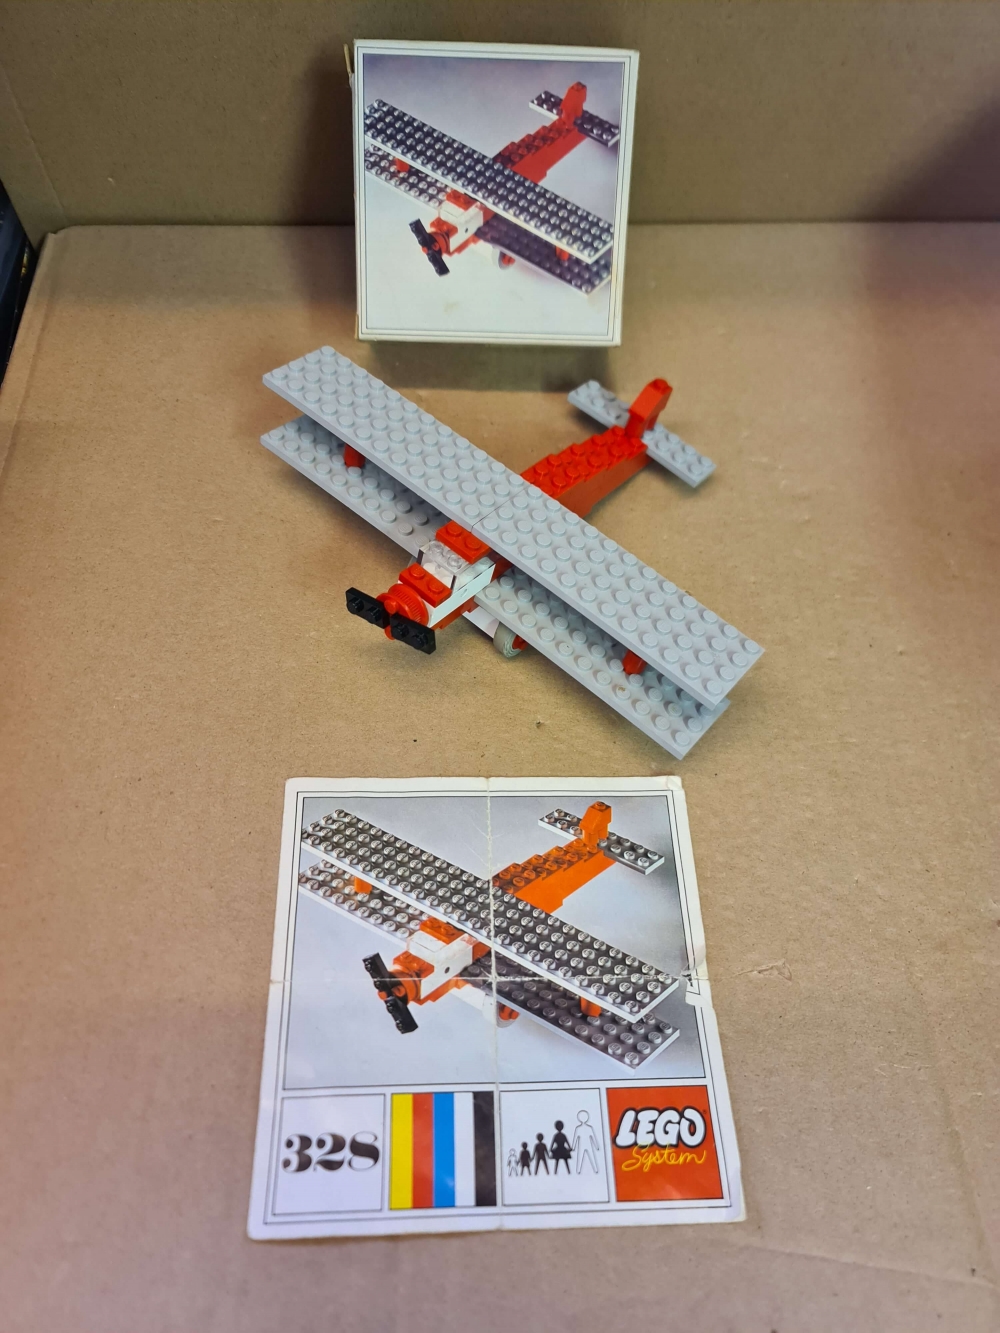 Sett 328 fra Lego Classic serien.
FLott sett.
Komplet med manual og eske